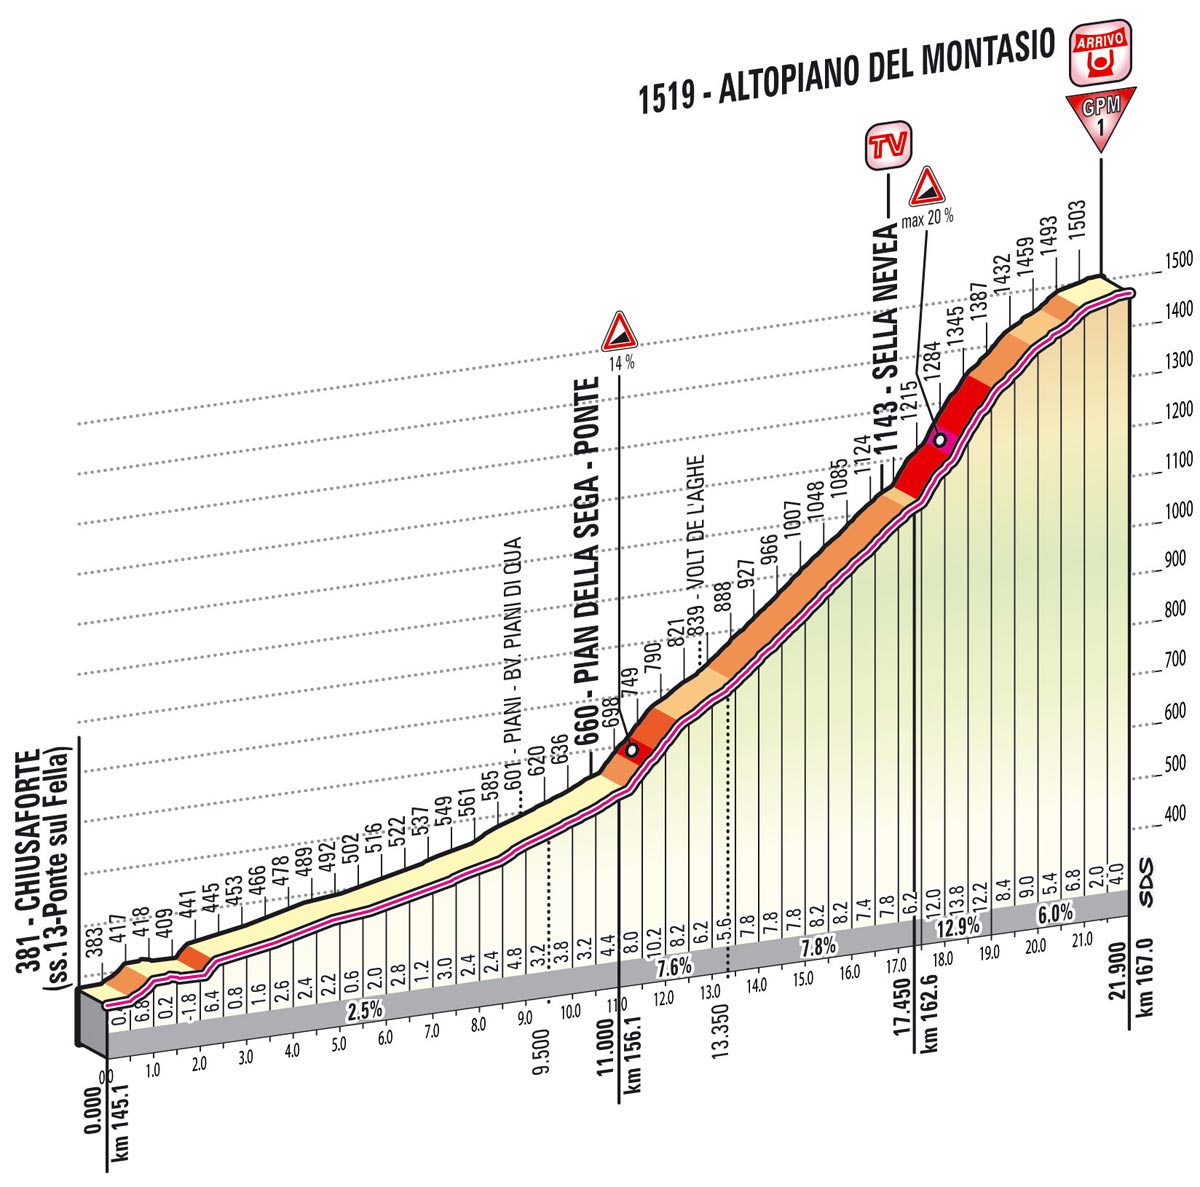 Giro d'Italia 2013 stage 10, Altopiano del Montasio profile